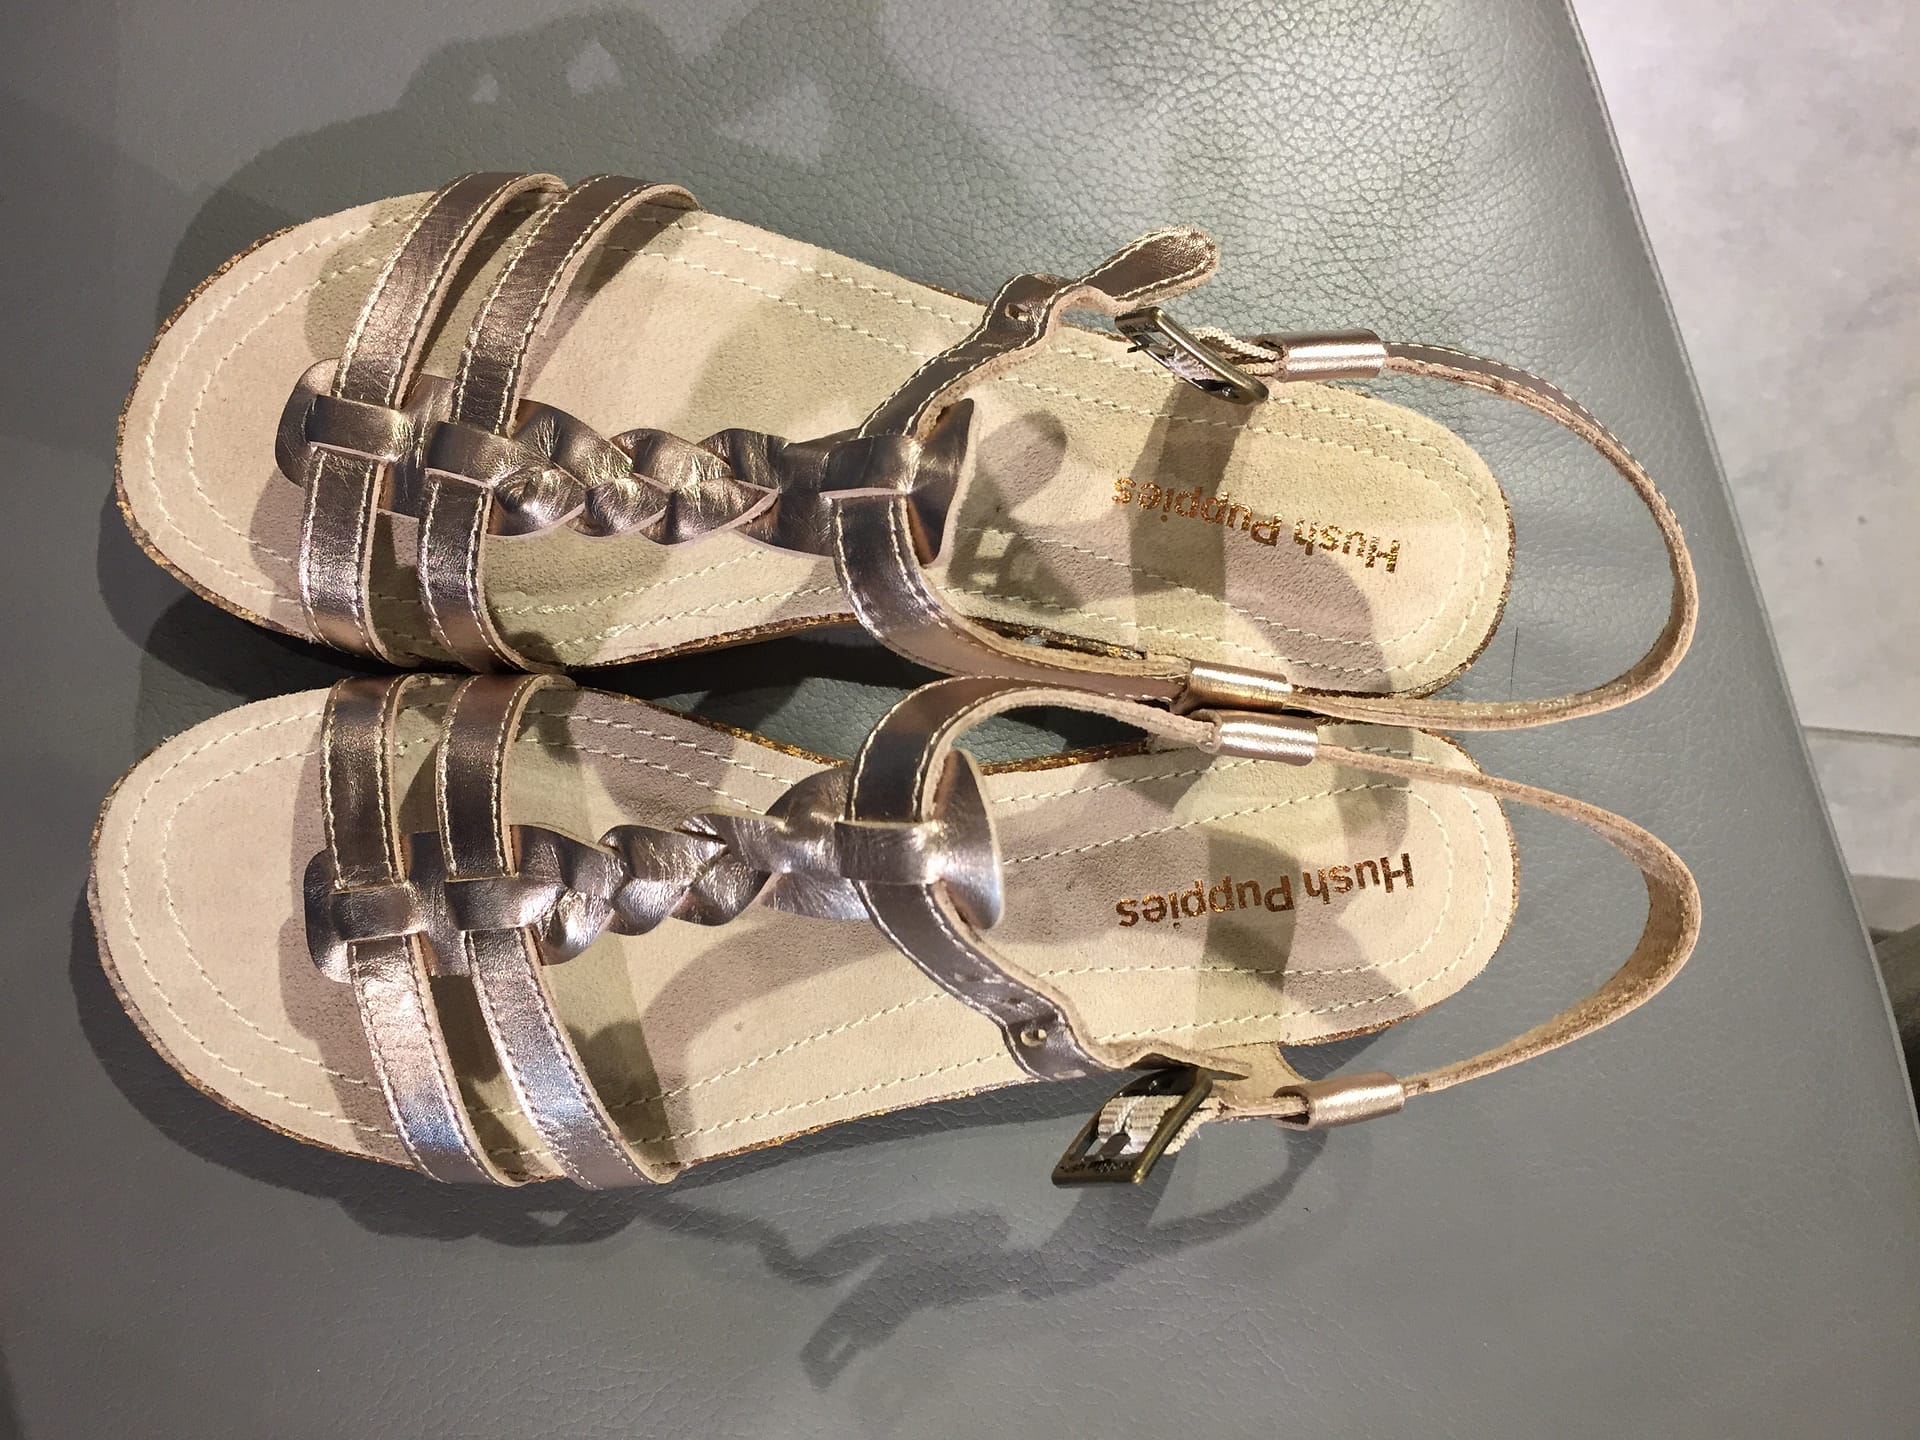 metallic sandals